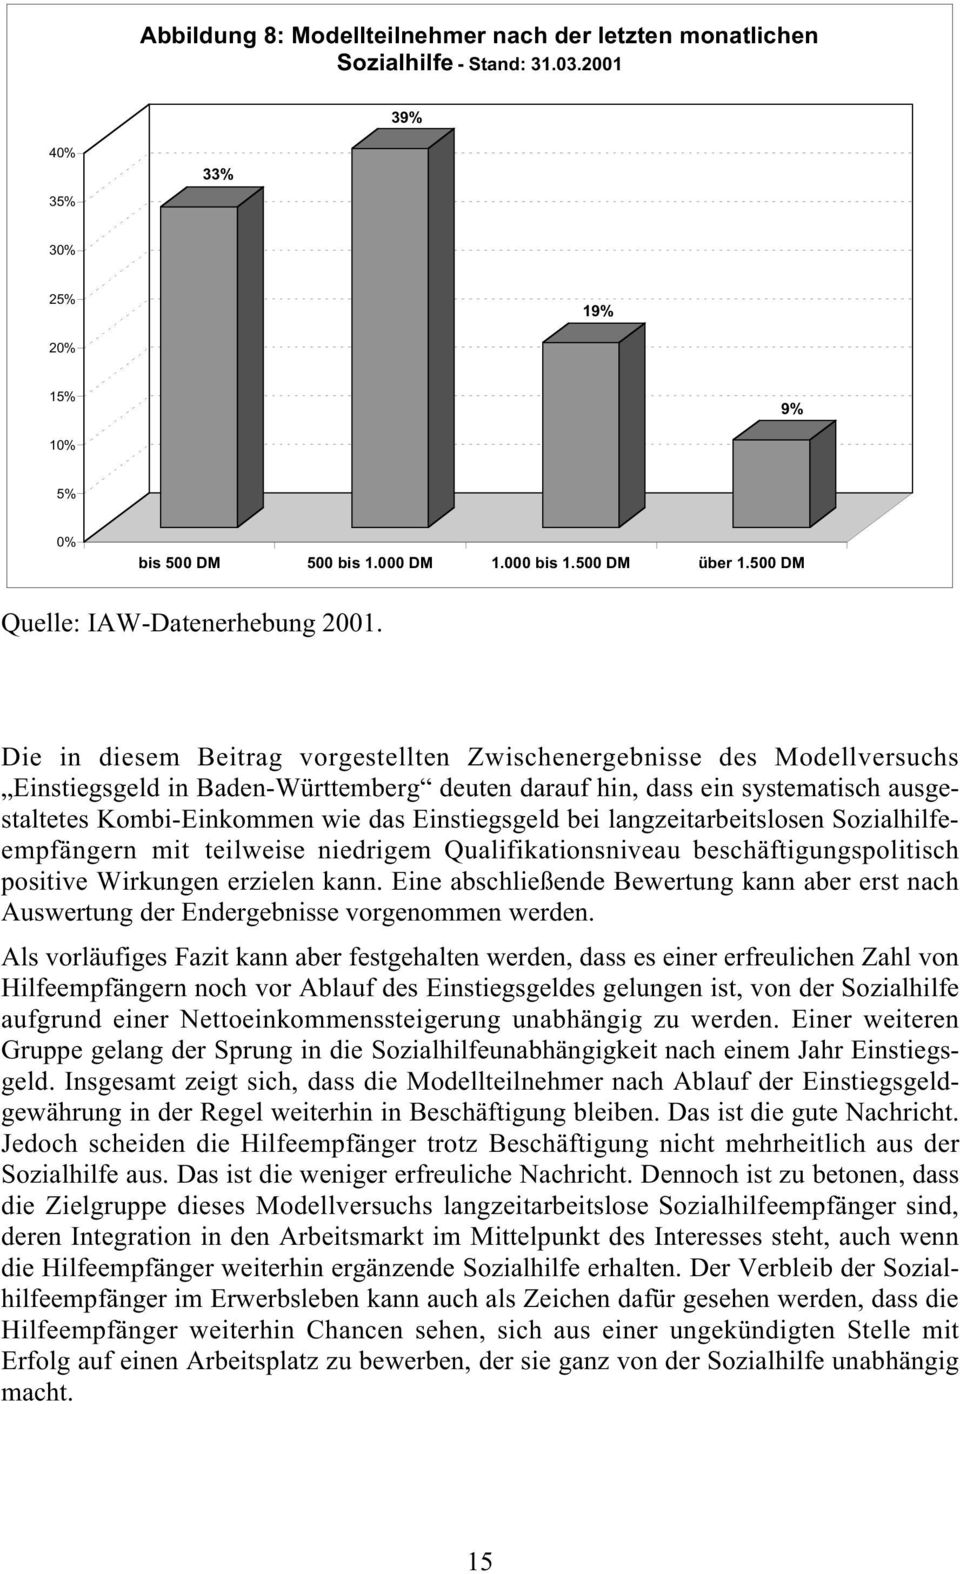 Die in diesem Beitrag vorgestellten Zwischenergebnisse des Modellversuchs Einstiegsgeld in Baden-Württemberg deuten darauf hin, dass ein systematisch ausgestaltetes Kombi-Einkommen wie das